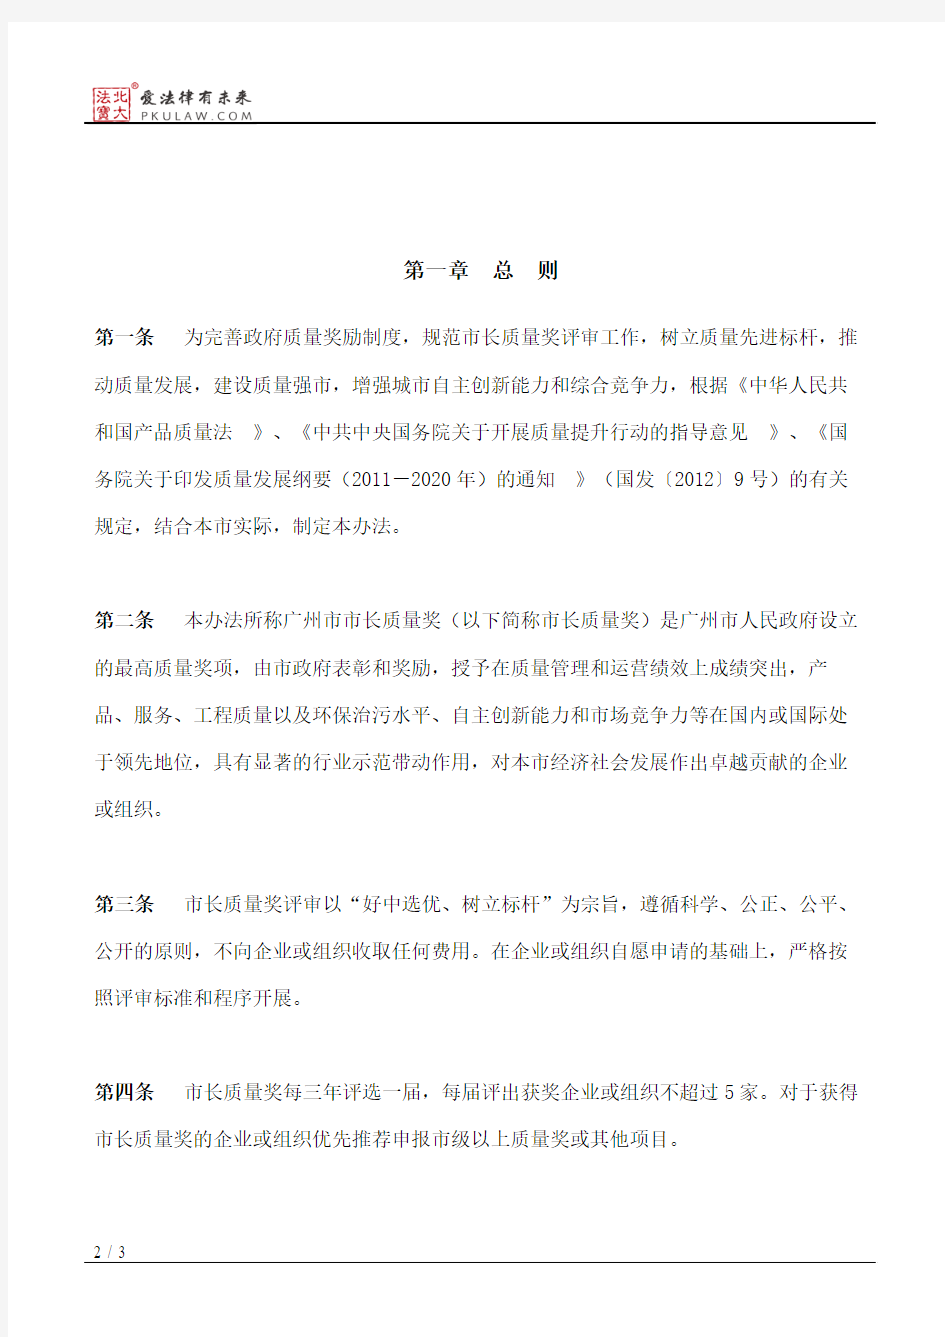 广州市人民政府办公厅关于印发广州市市长质量奖评审管理办法的通知(2018)